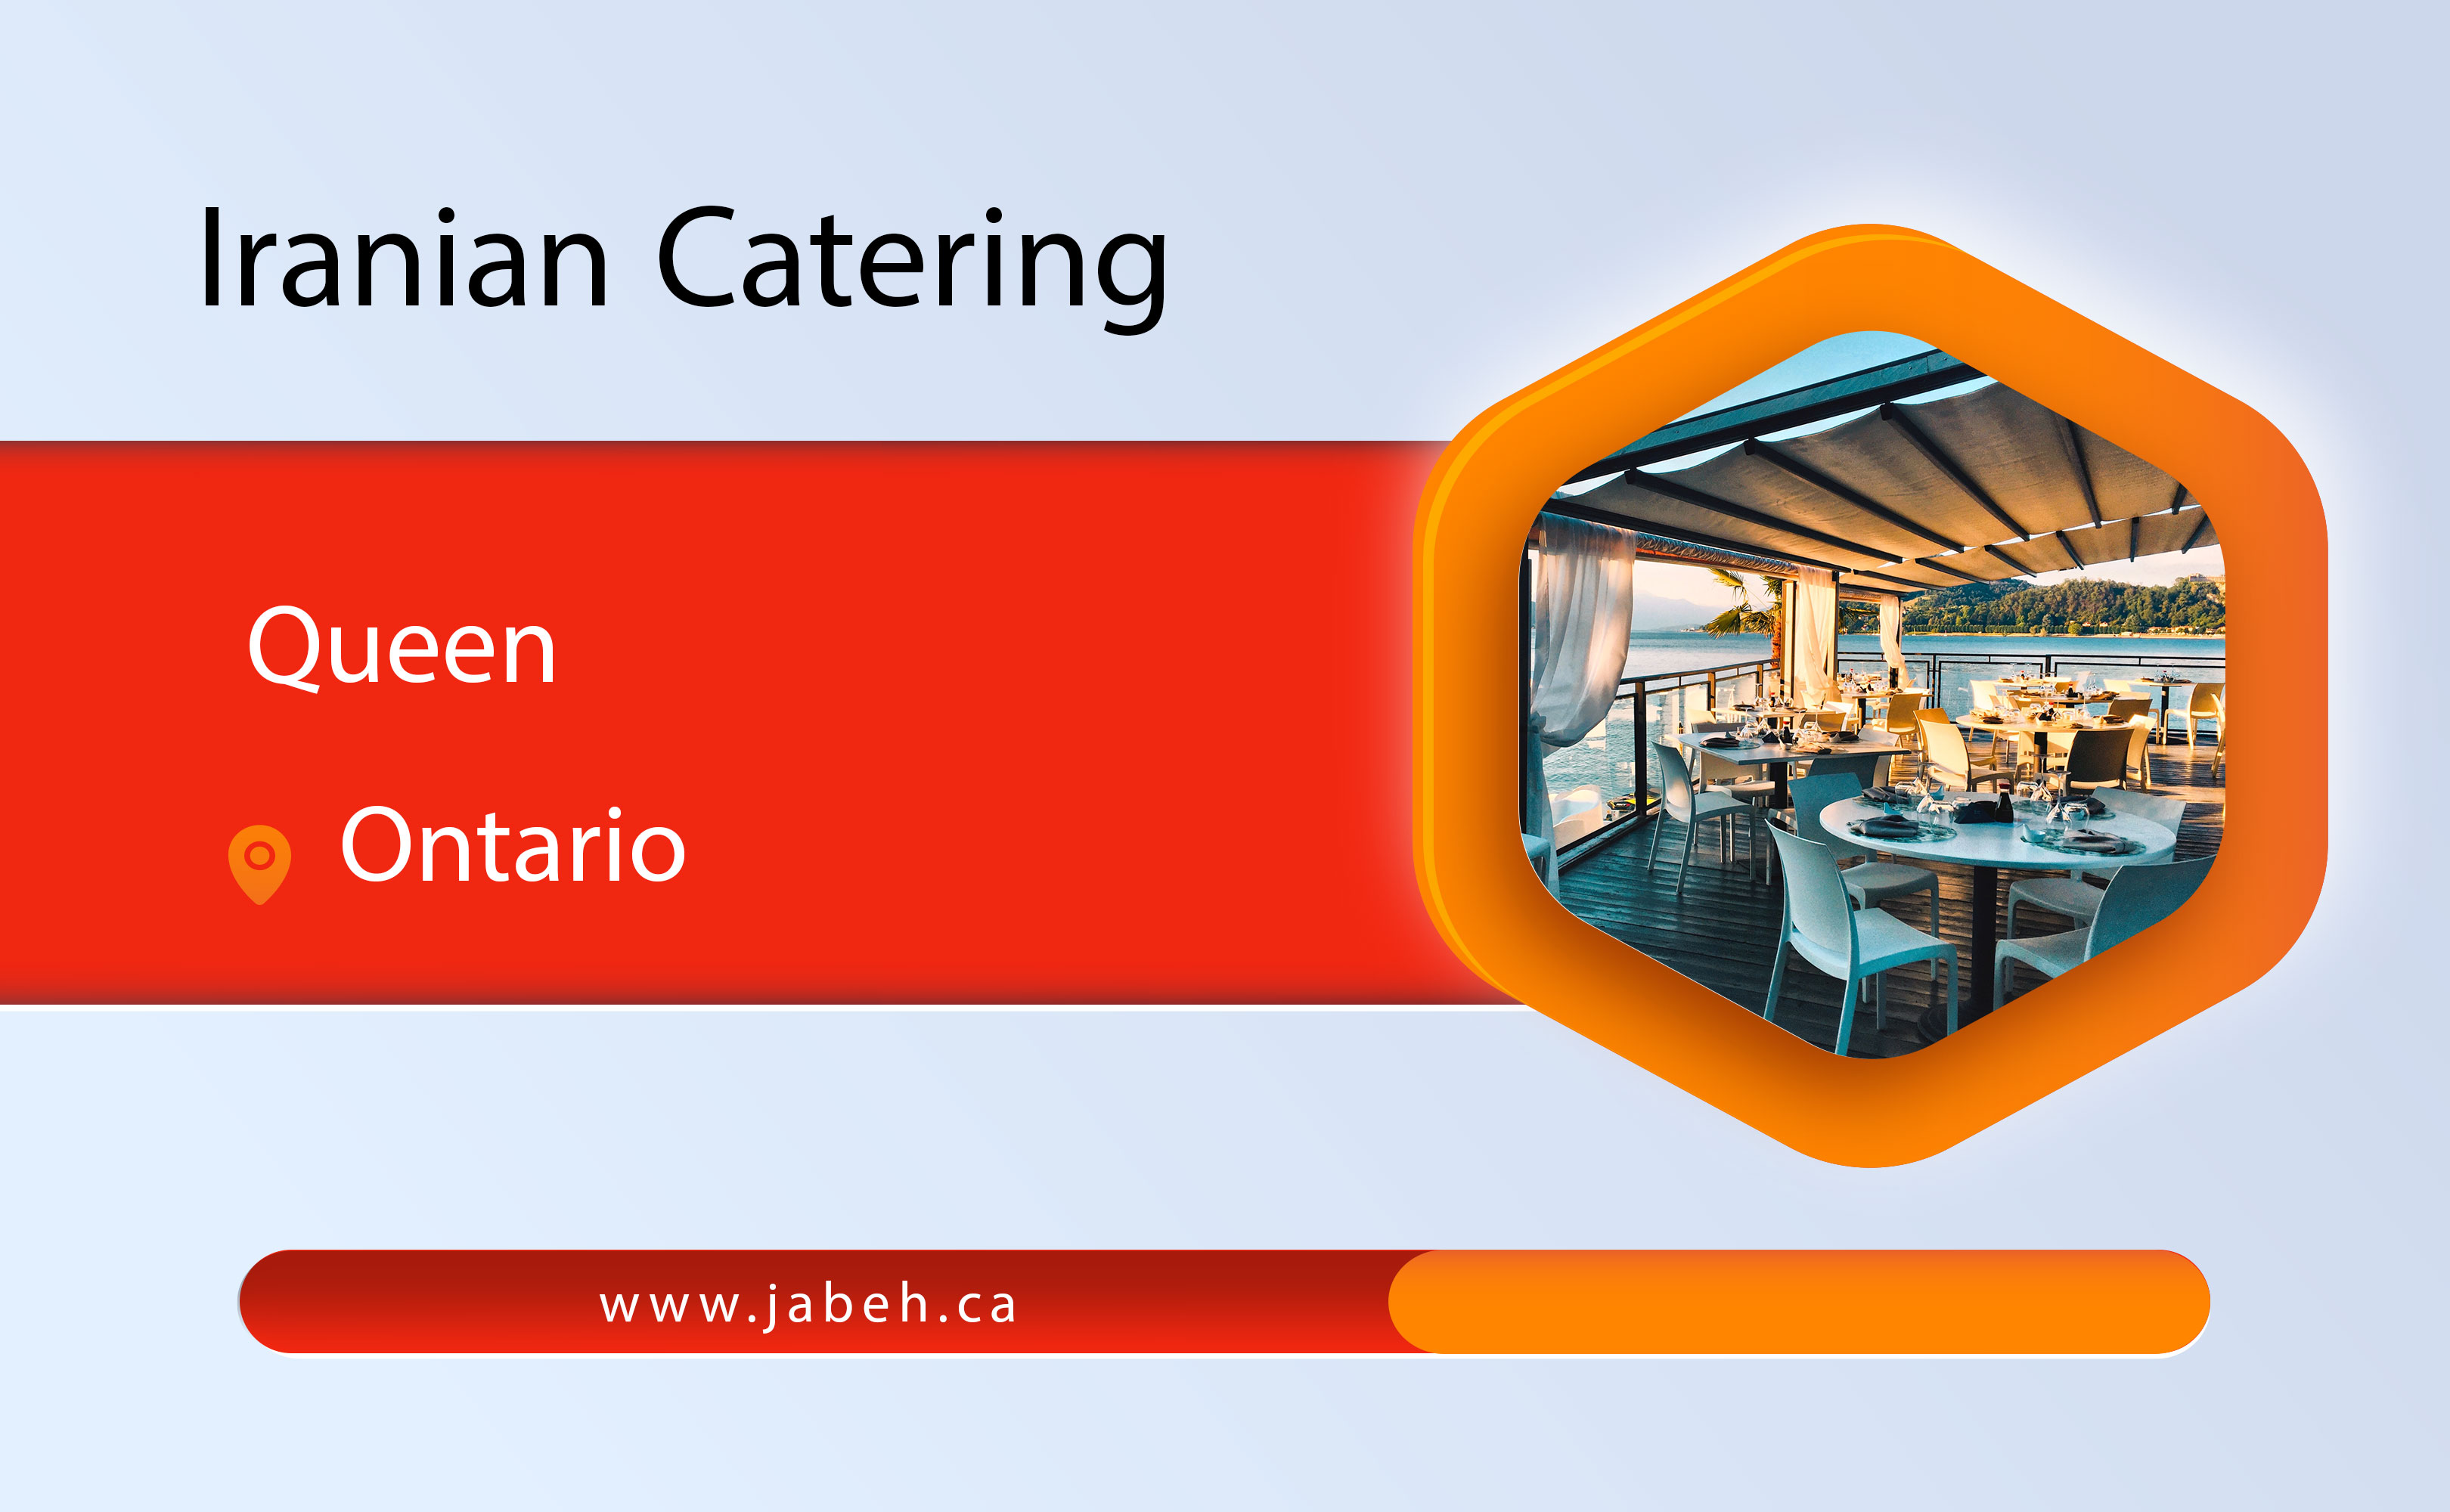 Queen Iranian Catering in Ontario